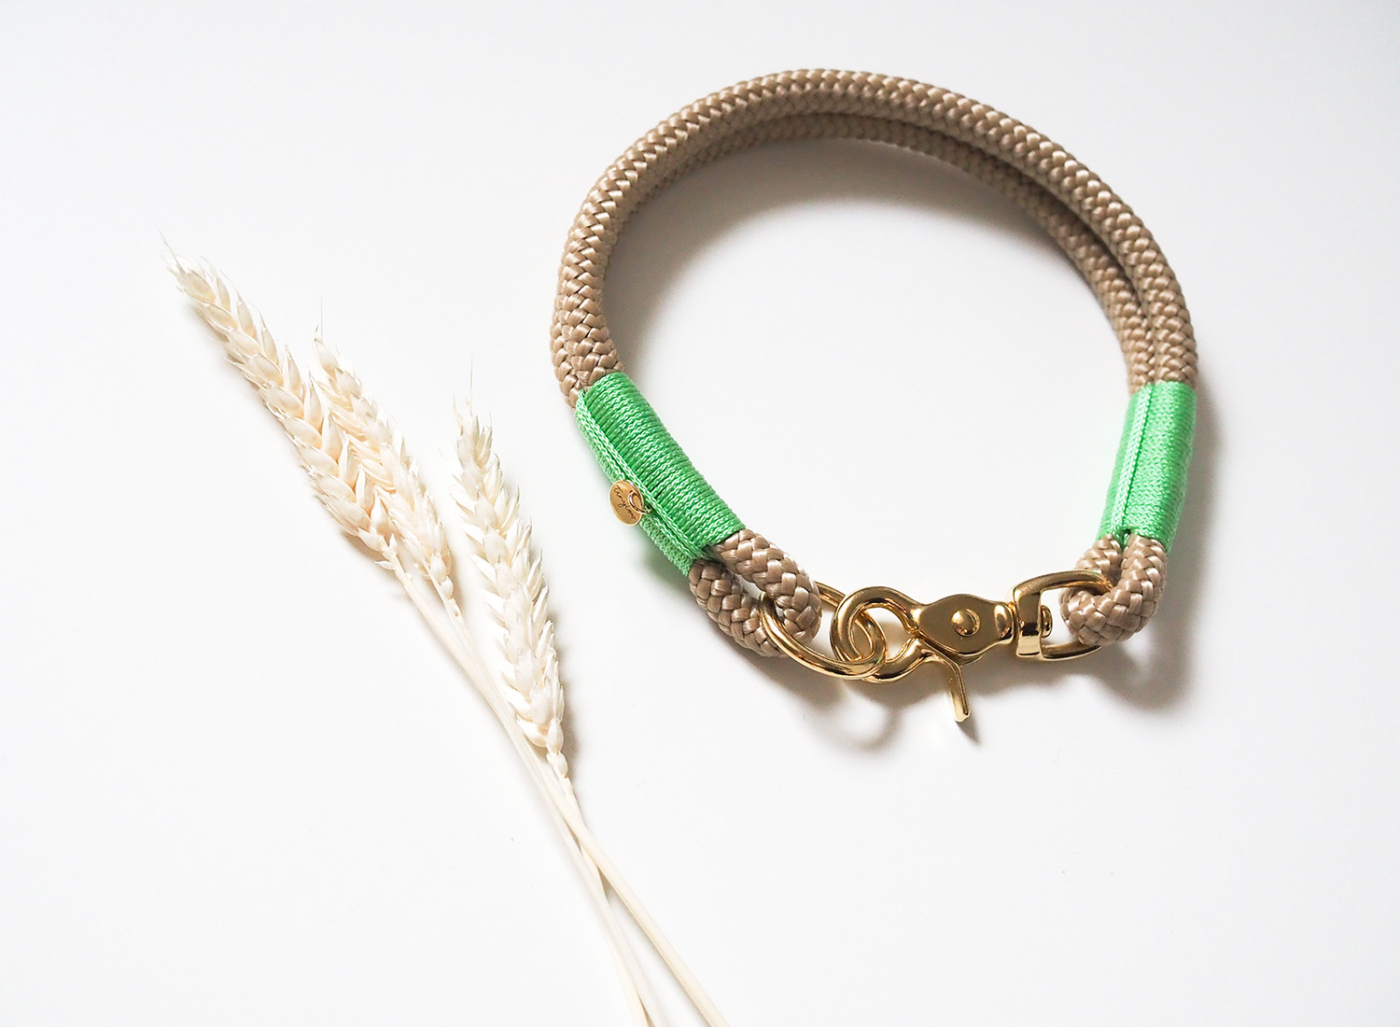 Halsband aus Tau in beige mit mintgrünen Details und goldenem Karabiner aus Messing.